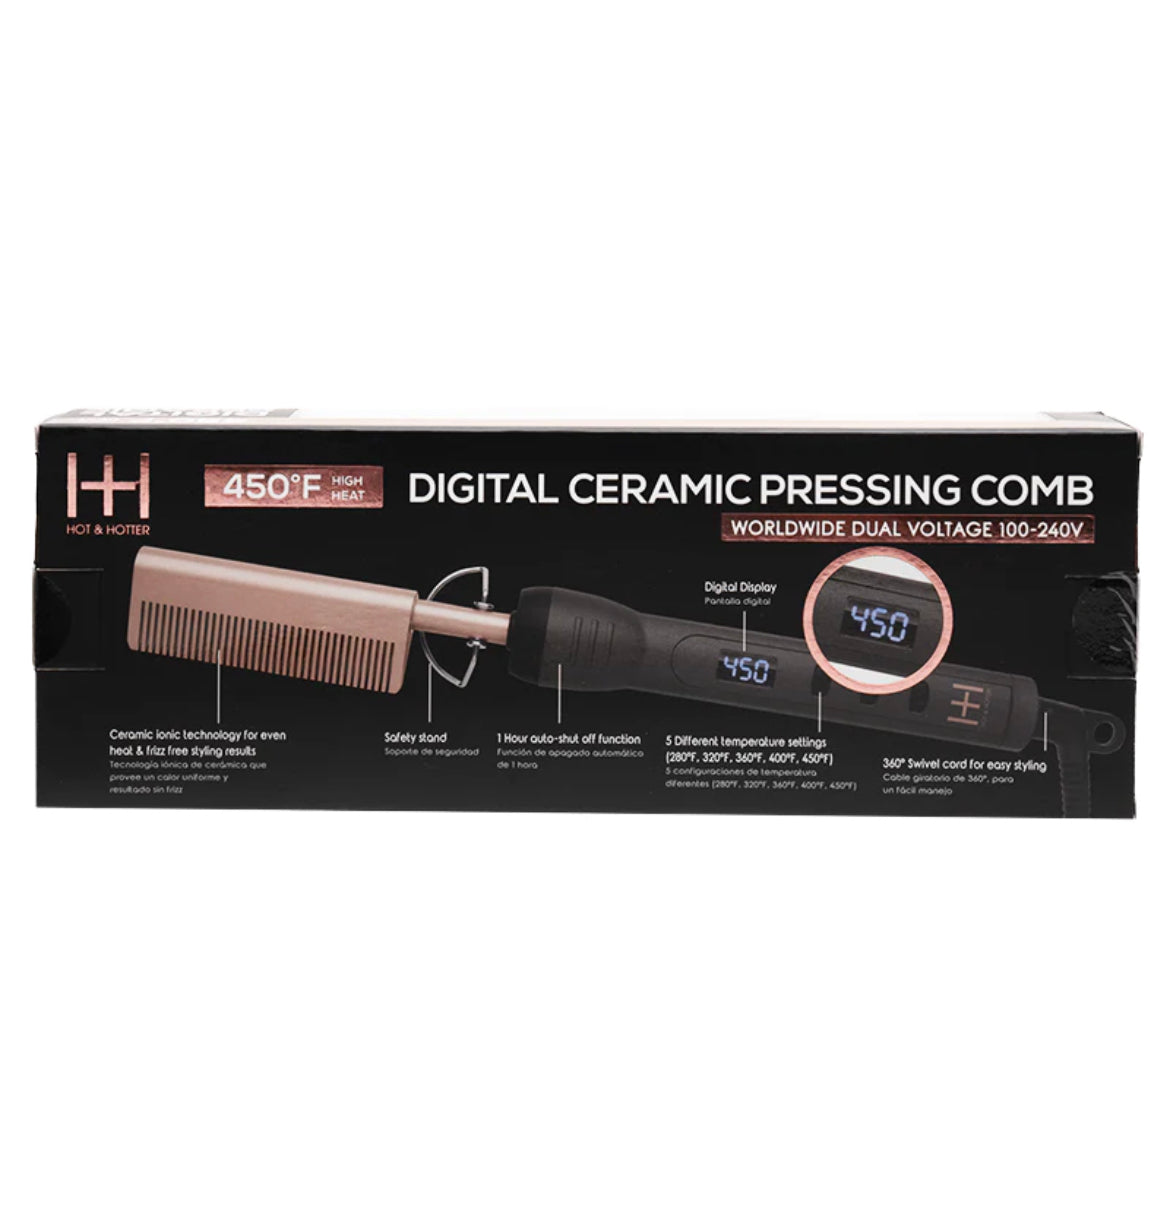 HOT & HOTTER DIGITAL CERAMIC PRESSING HOT COMB